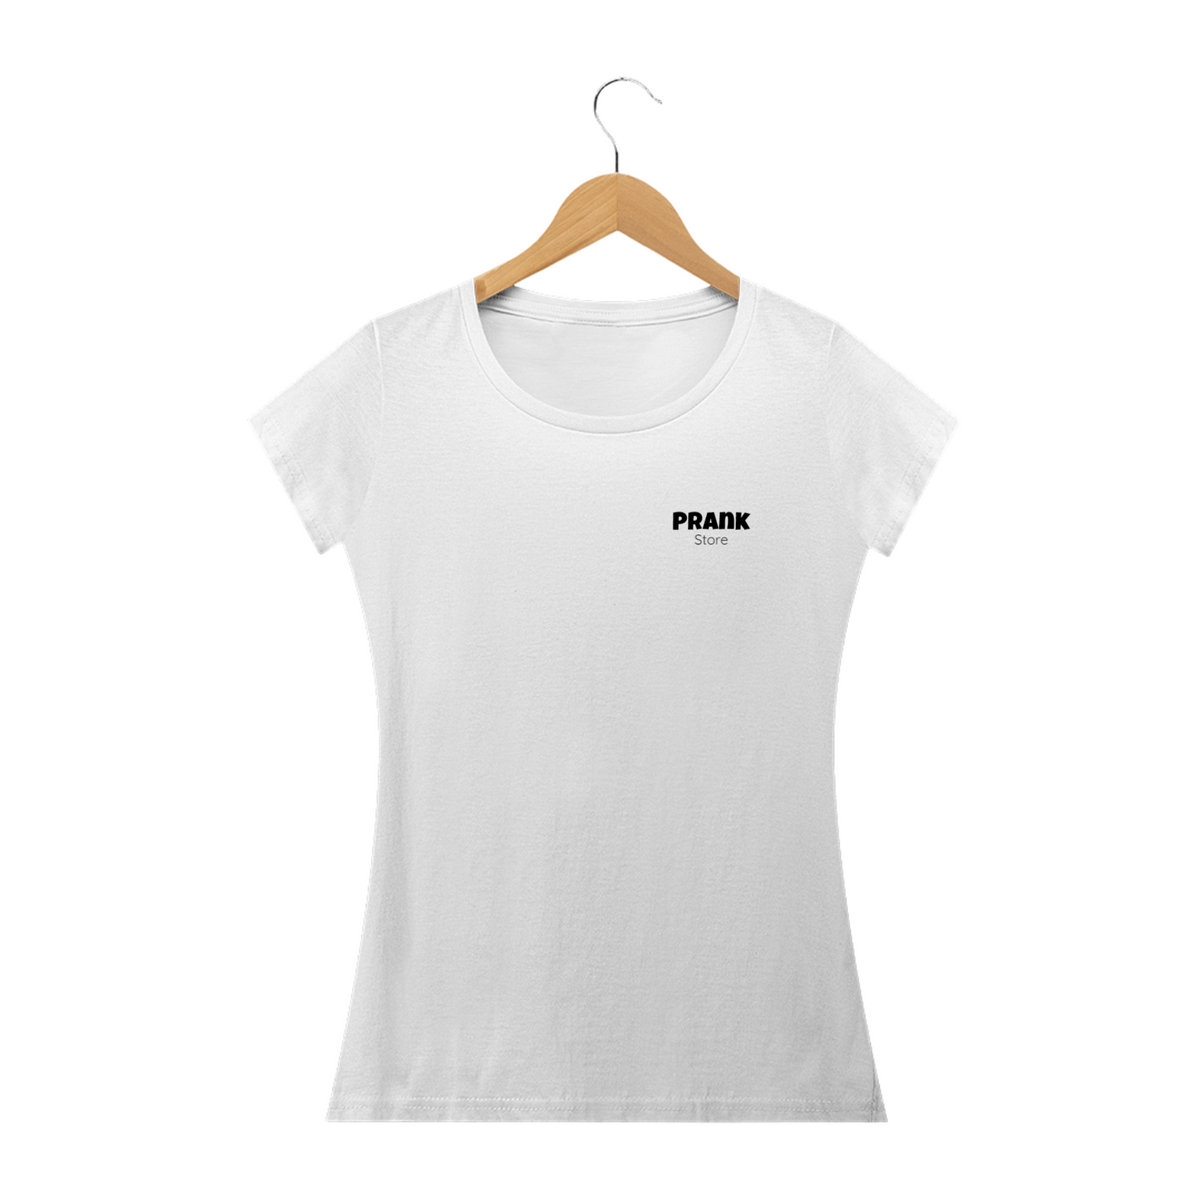 Nome do produto: T-shirt Feminina Branca e Colorida (letra preta) Prank Store